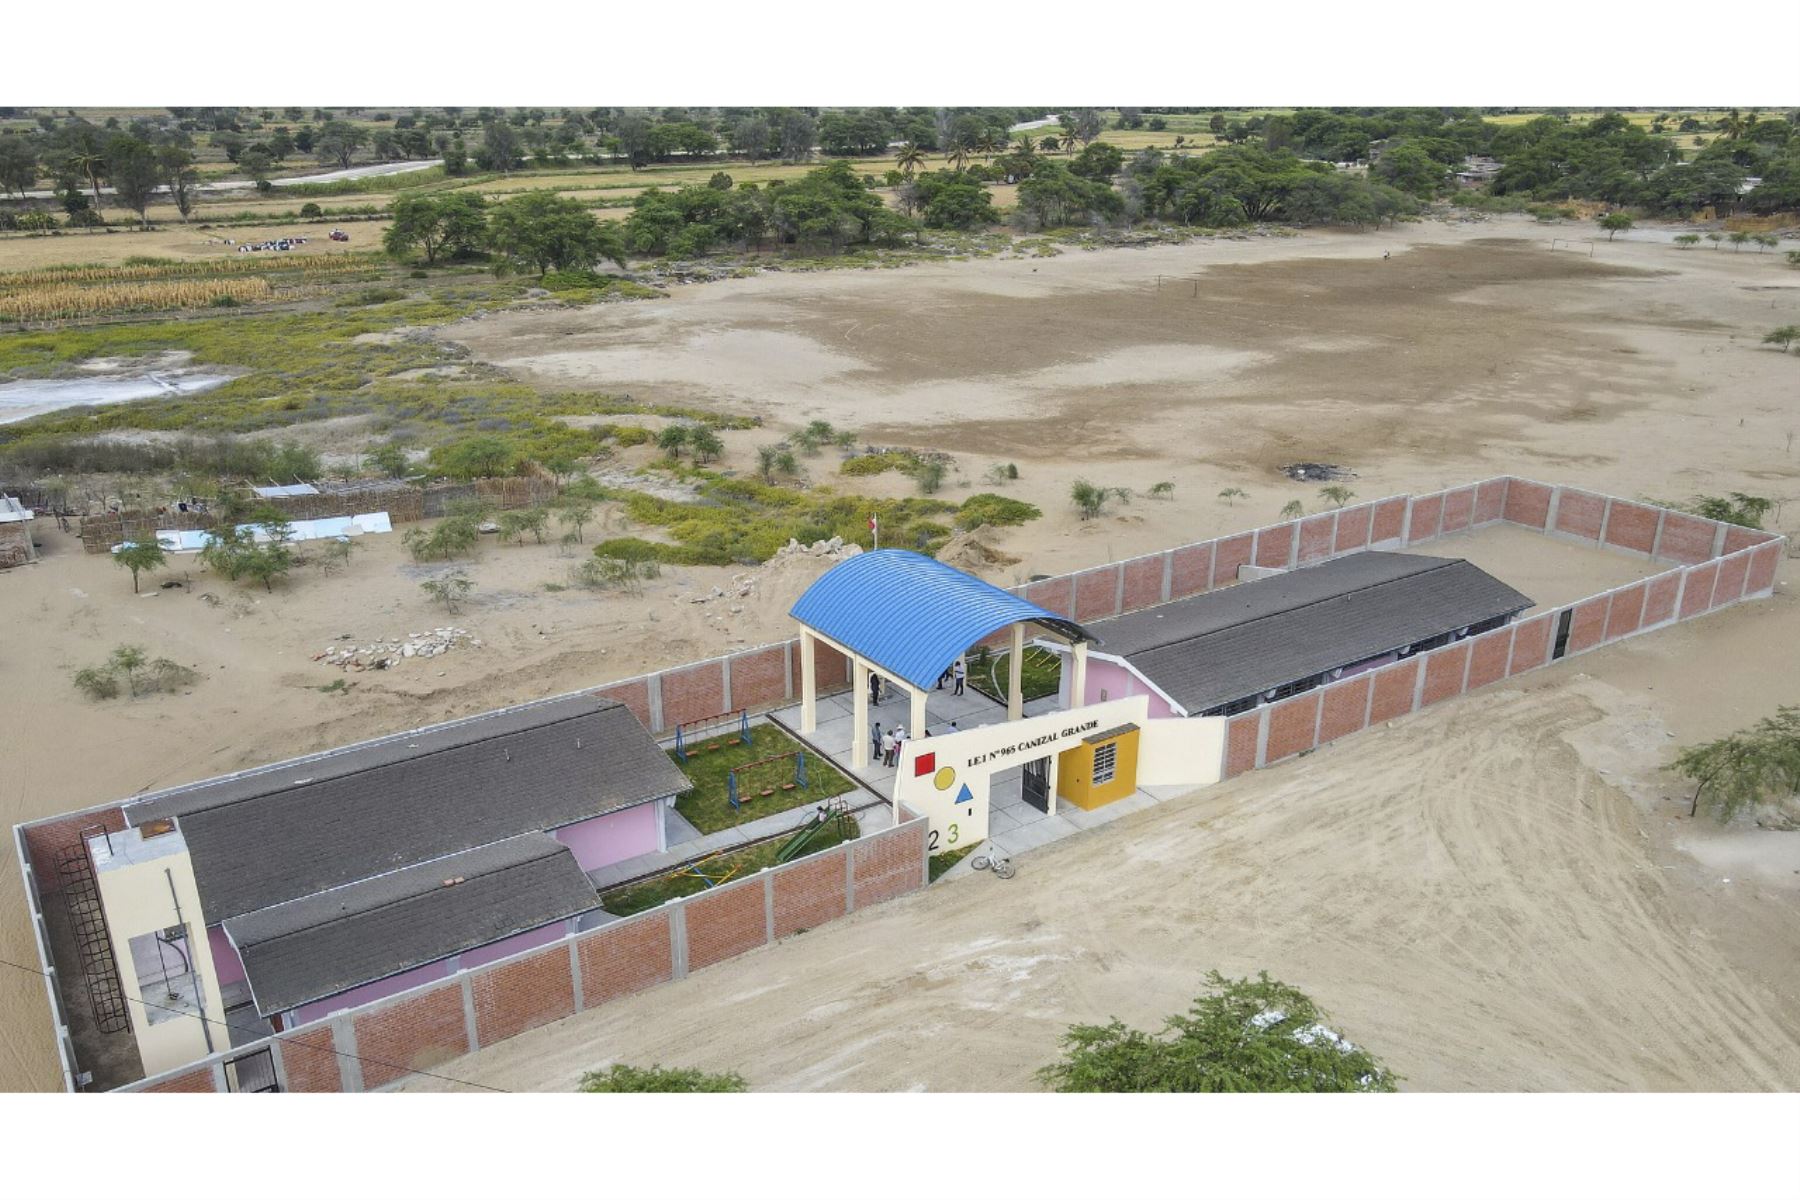 La región Piura, en el norte peruano, cuenta con más de 160 instituciones educativas reconstruidas, informó la ARCC. Foto: ANDINA/Difusión